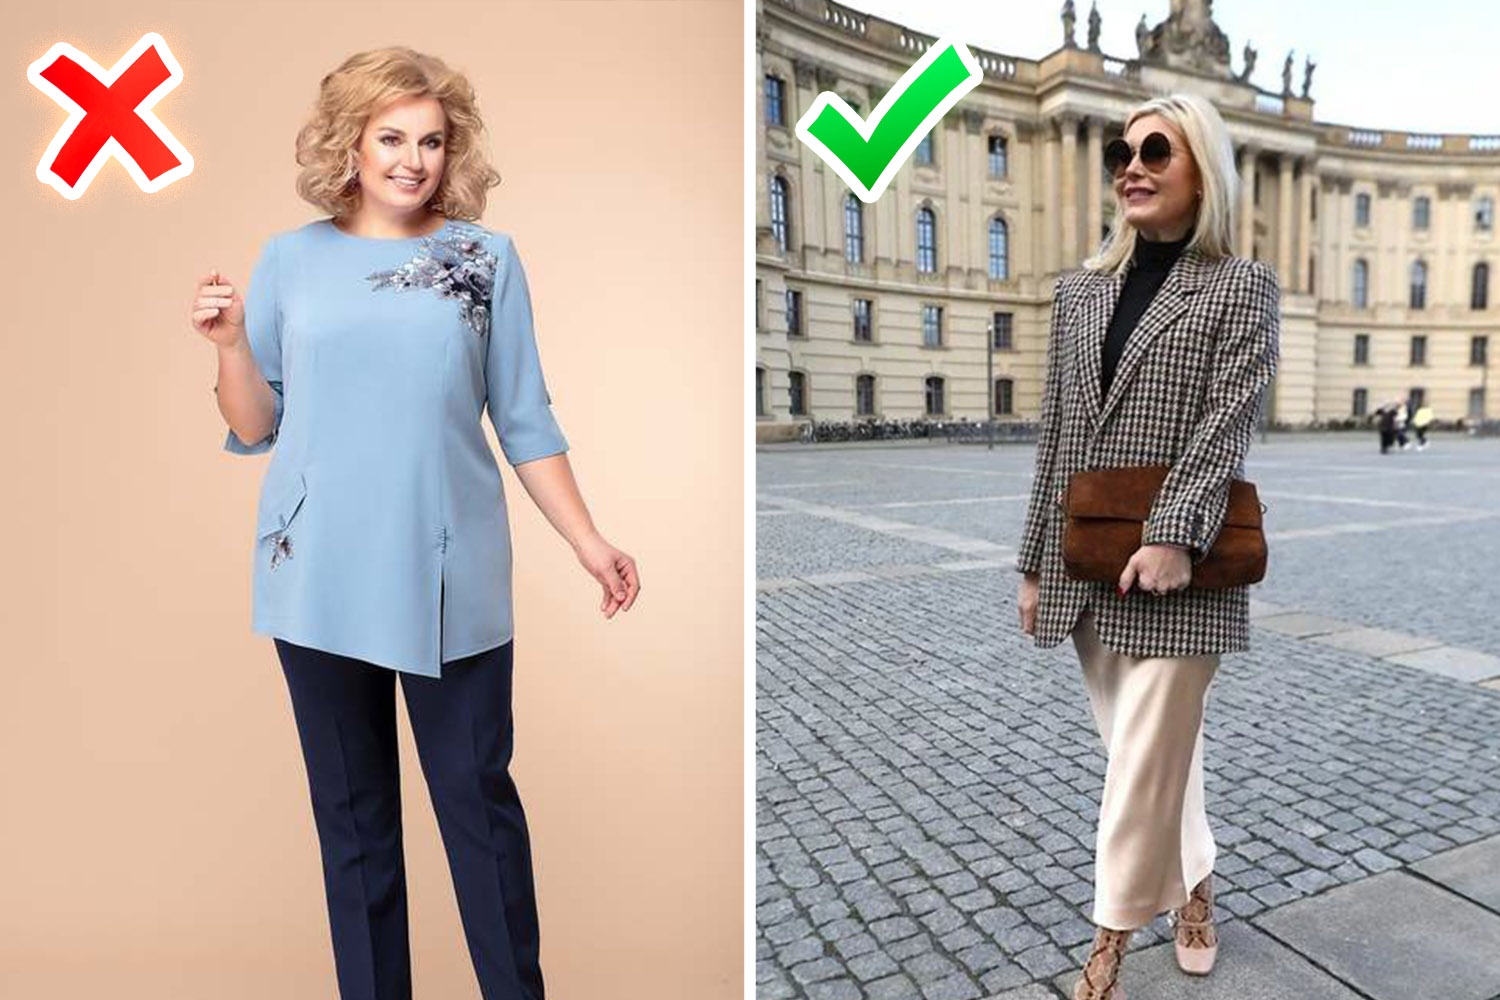 Привычка носить то, что куплено 10 лет назад, смело накидывает 10 лет сверху — крой блузы в сочетании с аппликацией, как на фото слева, давно вышел из моды